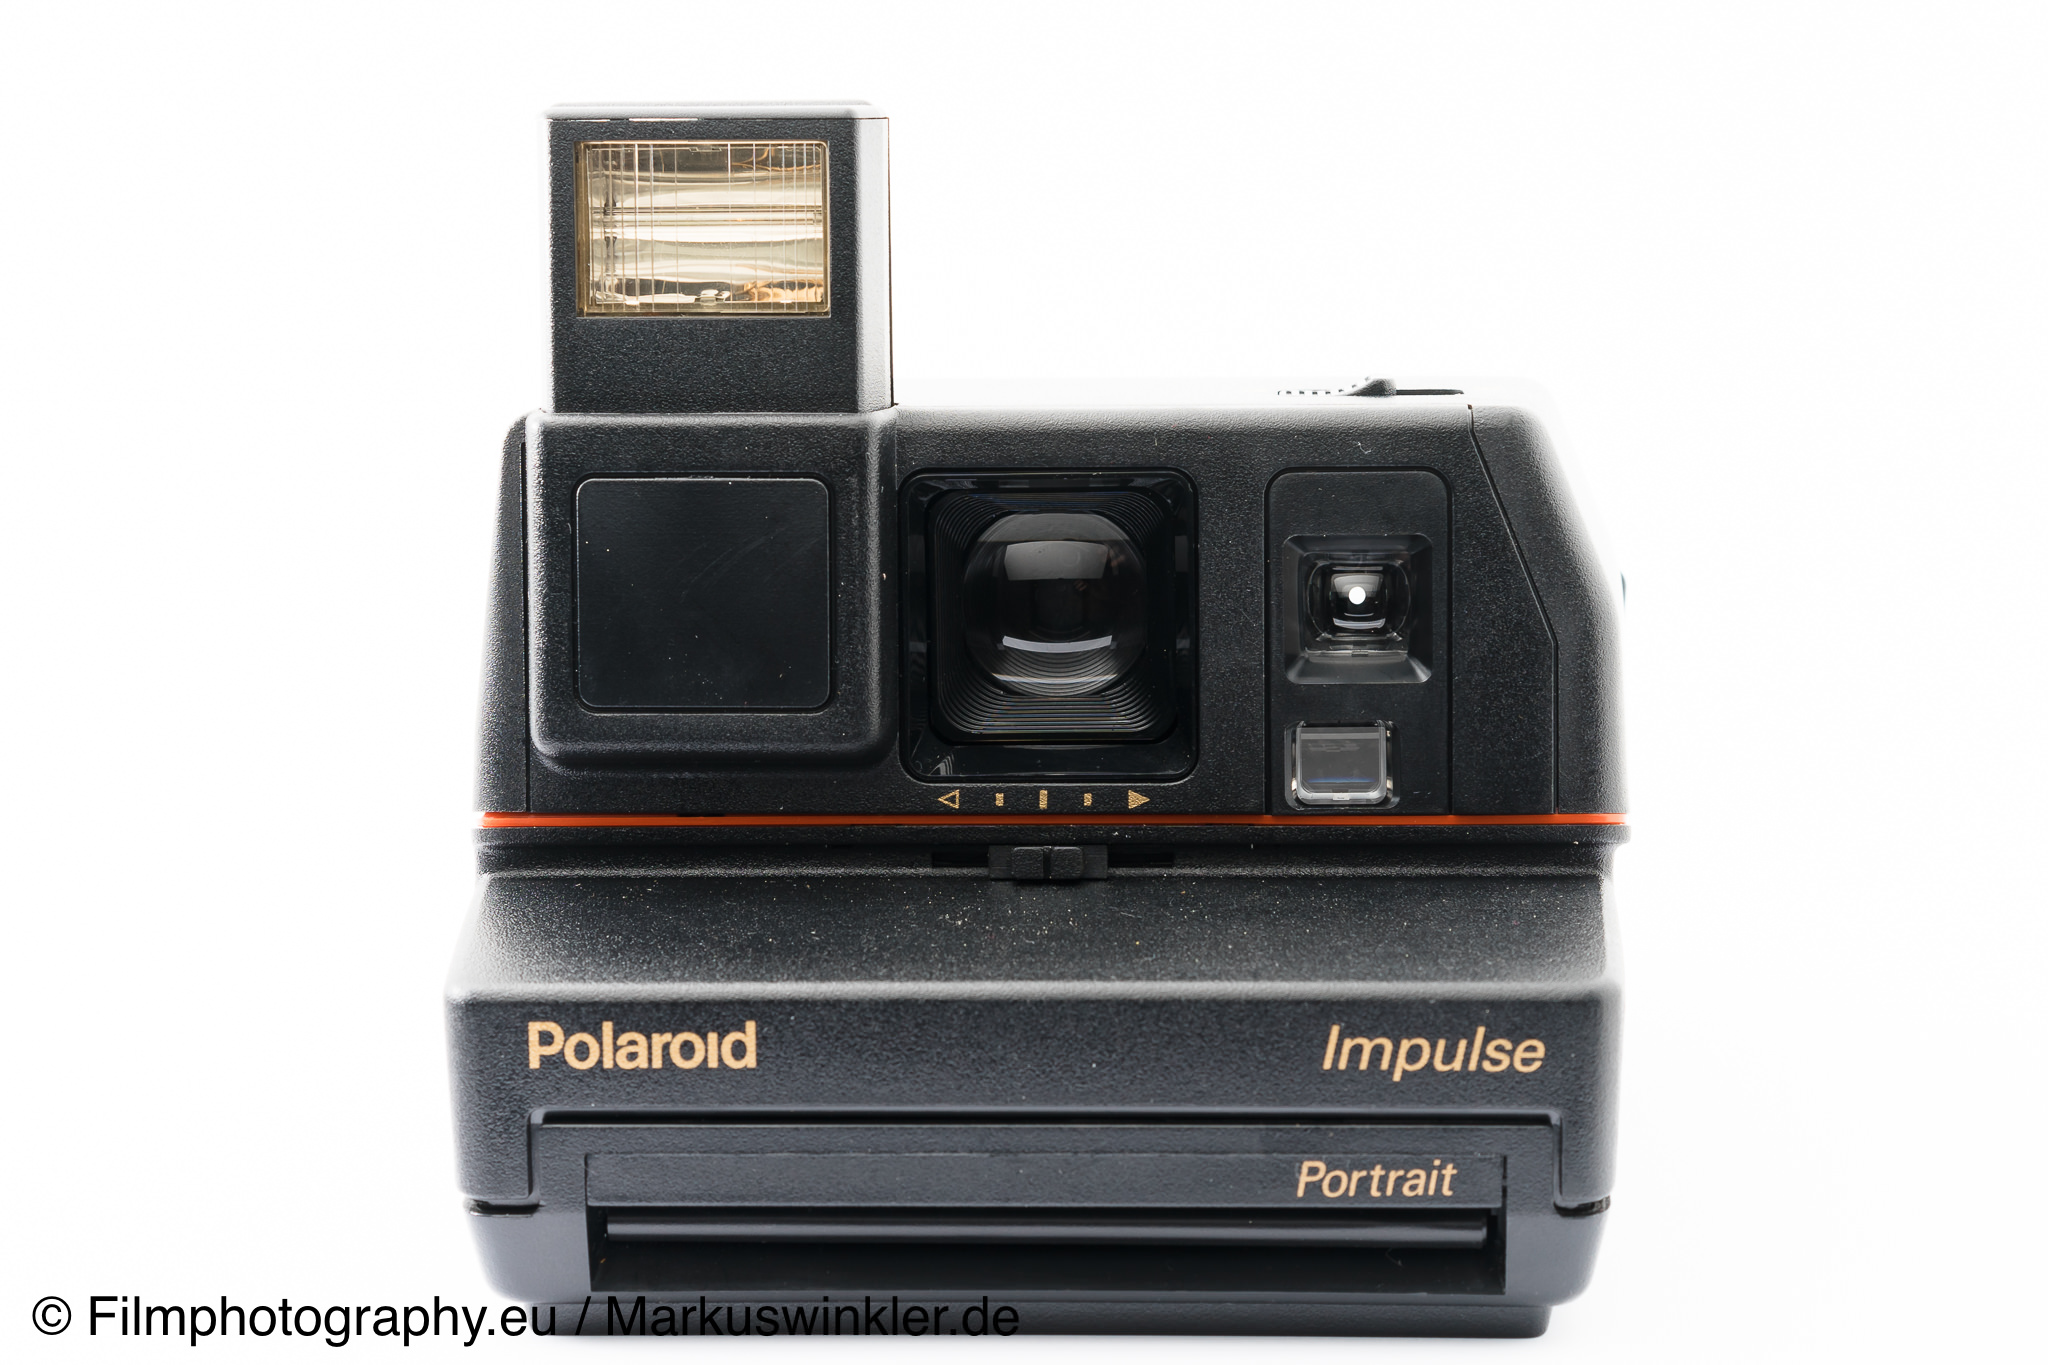 Polaroid Impulse Camera Directly Managed Store